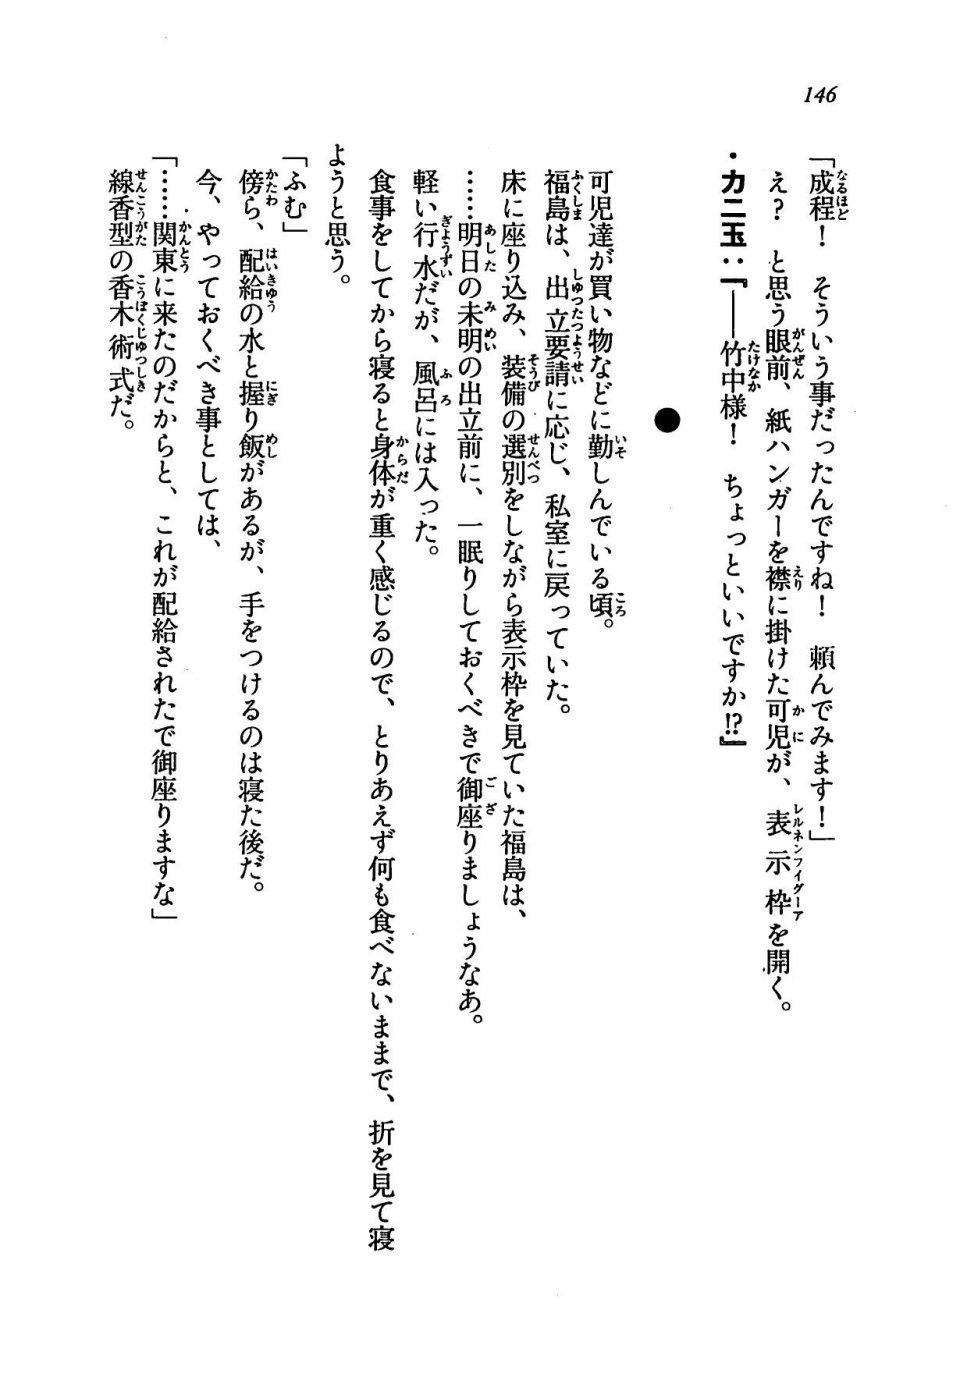 Kyoukai Senjou no Horizon LN Vol 19(8A) - Photo #146